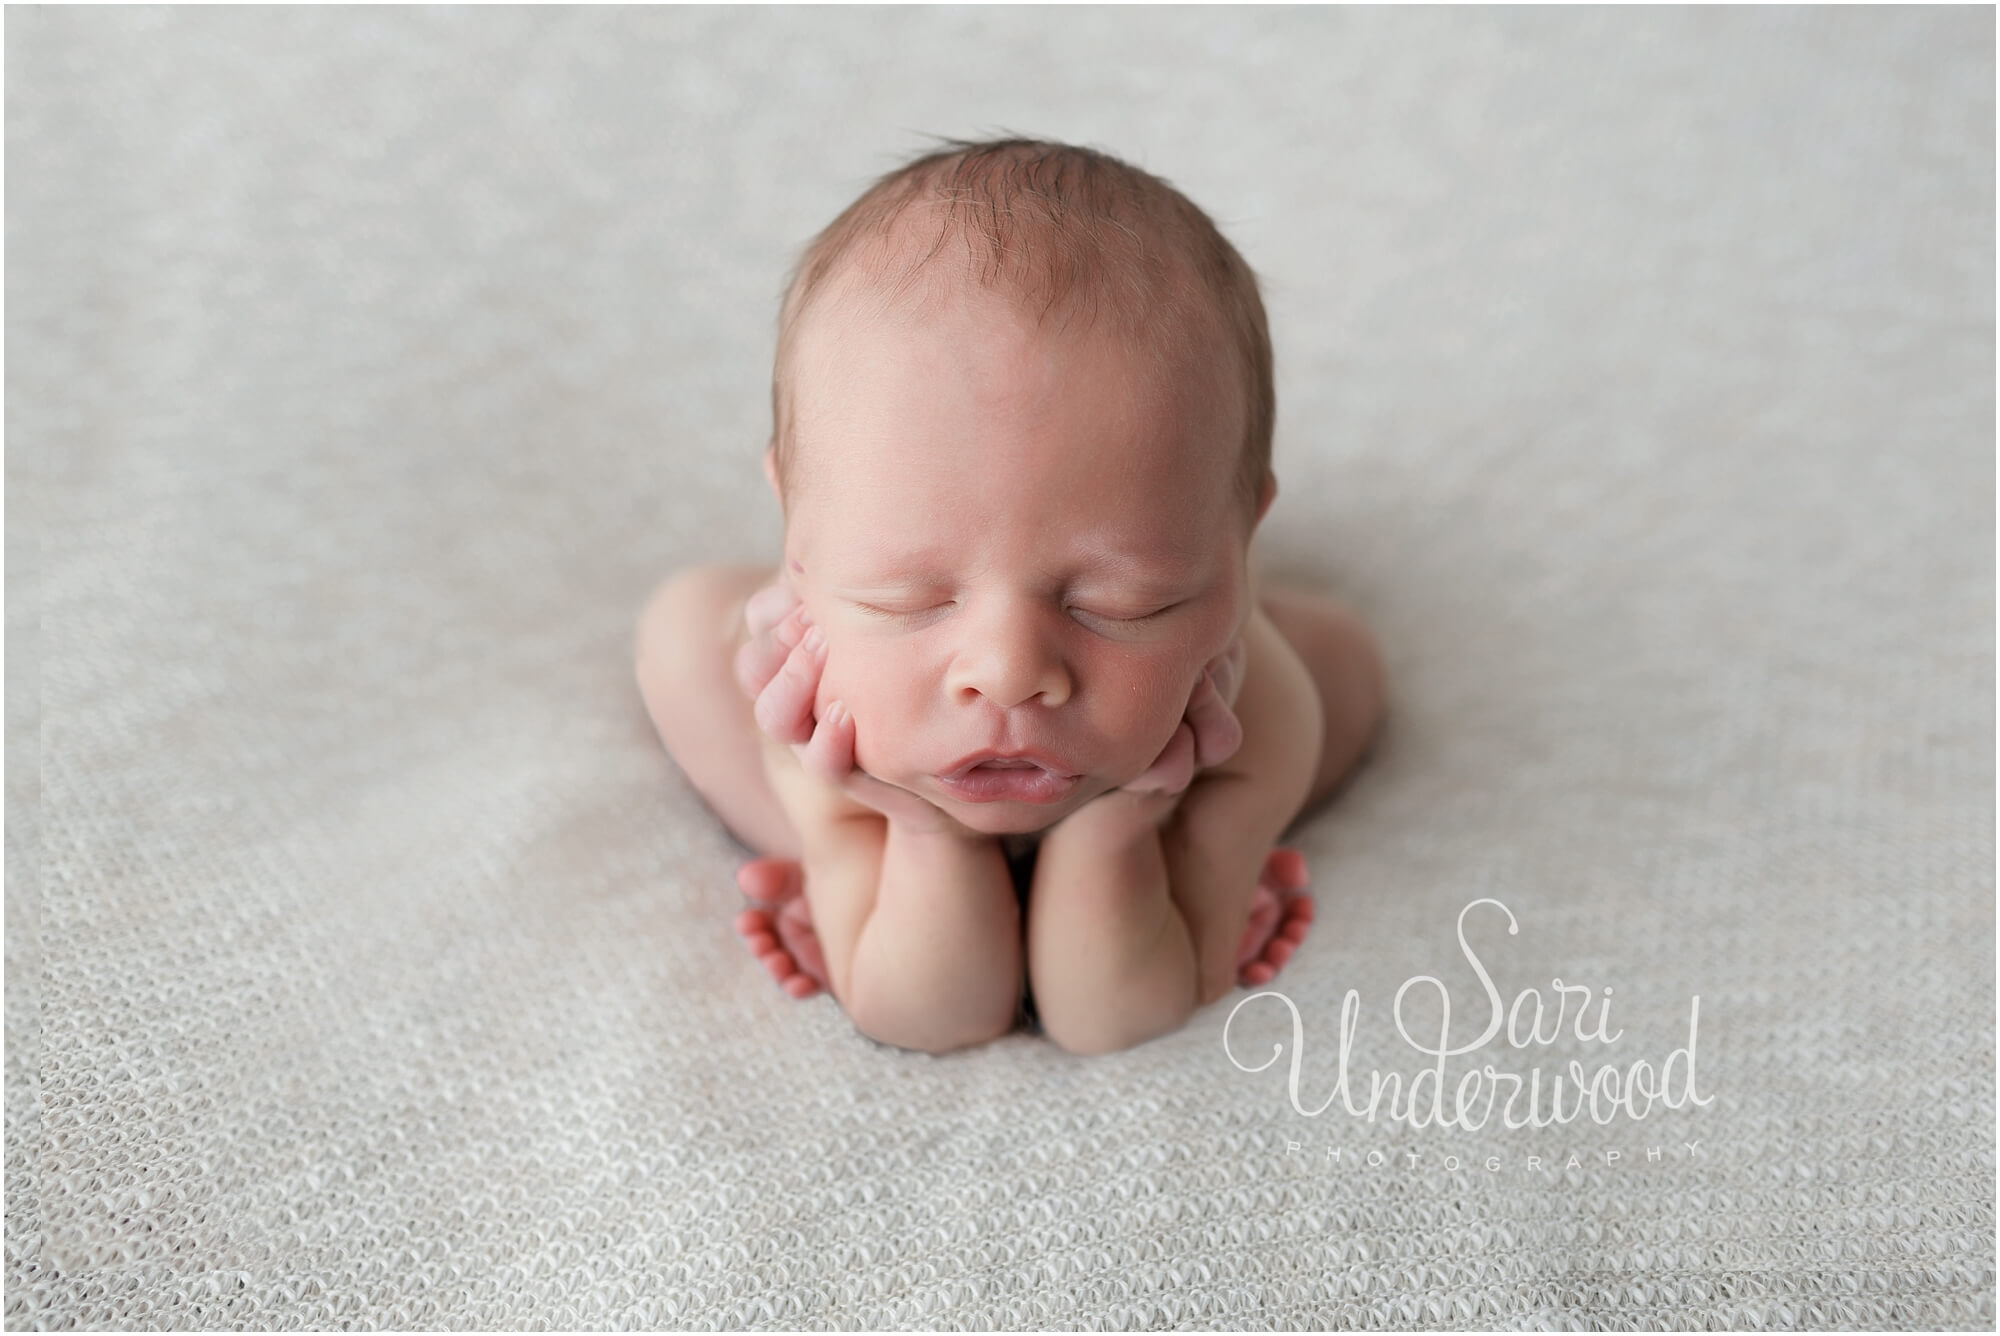 Orlando infant photographer